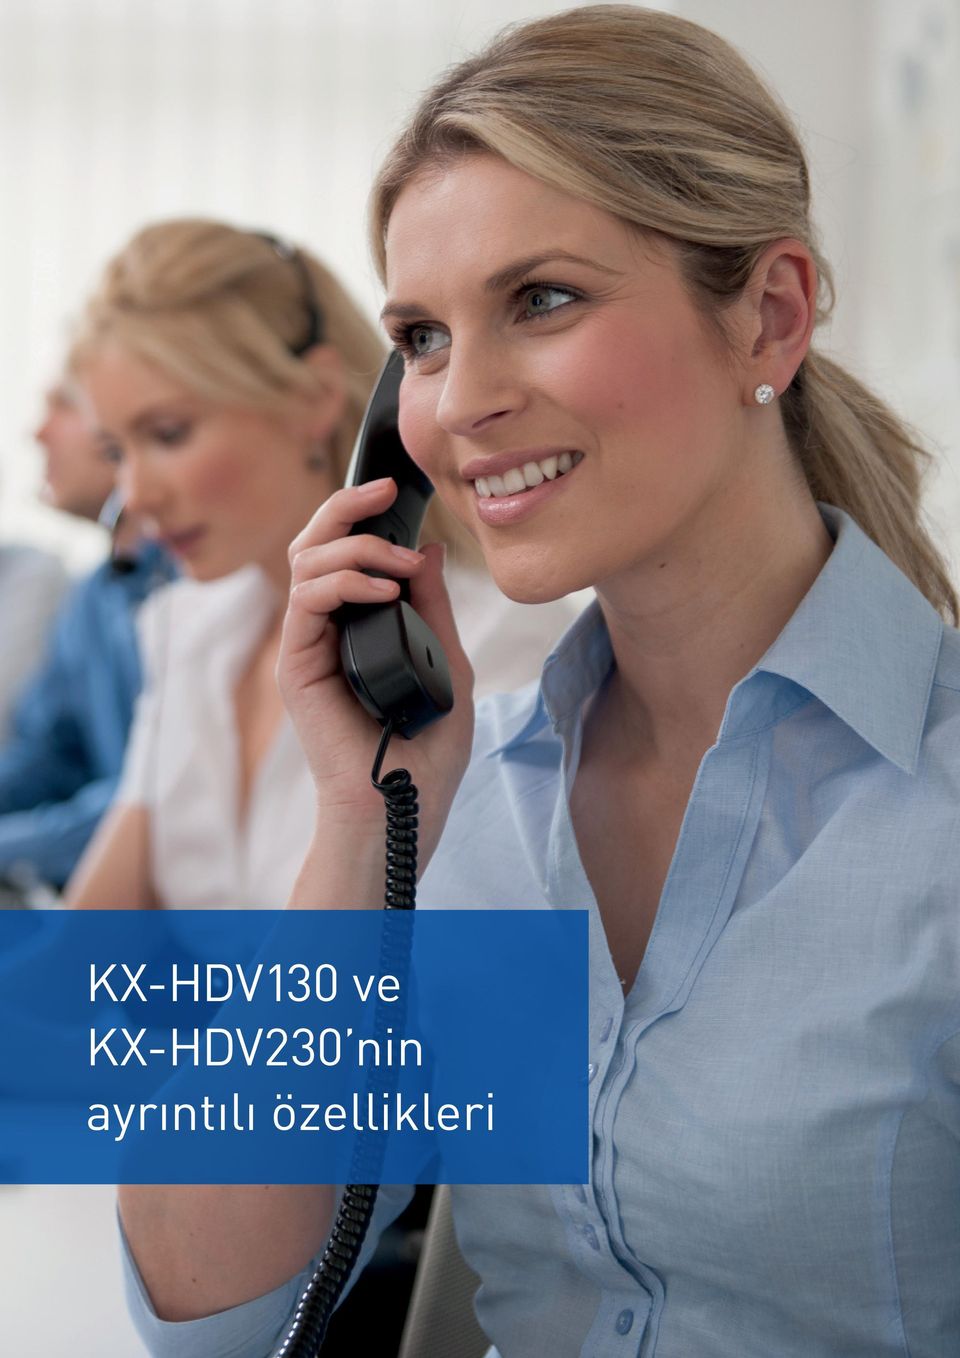 KX-HDV230